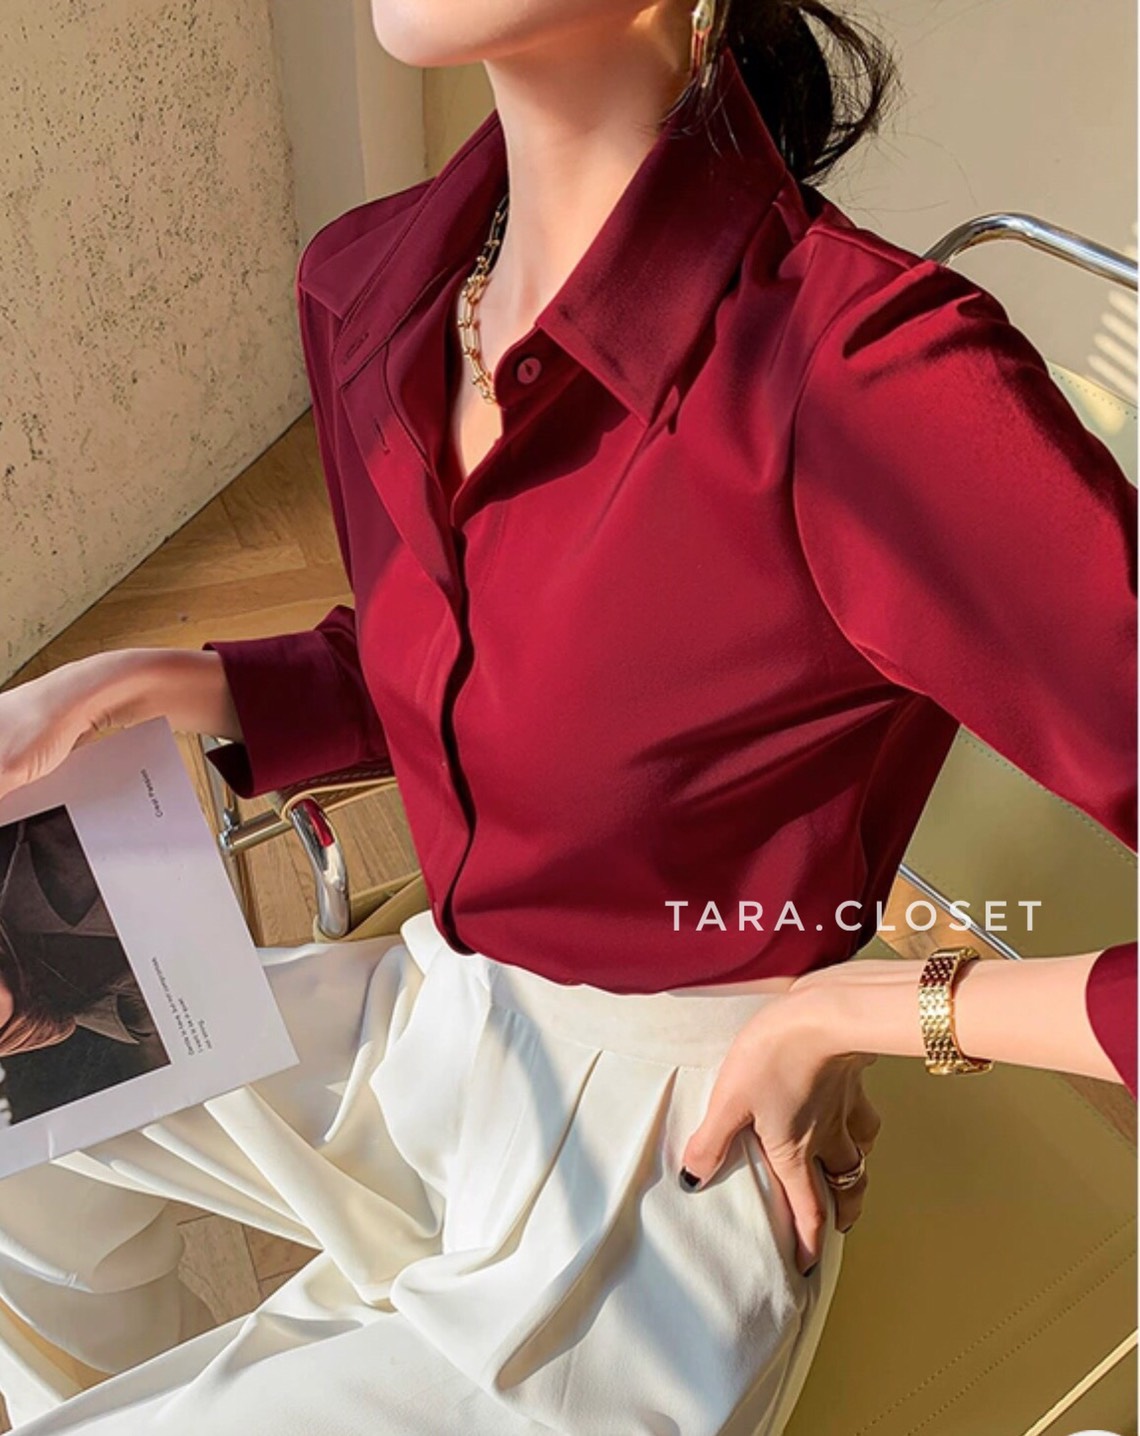 IT022 TARA Shirt เสื้อเชิ้ตคอปก รุ่นยอดฮิต แขนยาว มีกระดุมหน้า ดีไซน์เก๋ ผ้าไหมอิตาลีอย่างดี ผ้าไม่หนามาก ผ้าใส่สบาย ไม่ร้อน ใส่ได้ทุกโอกาส